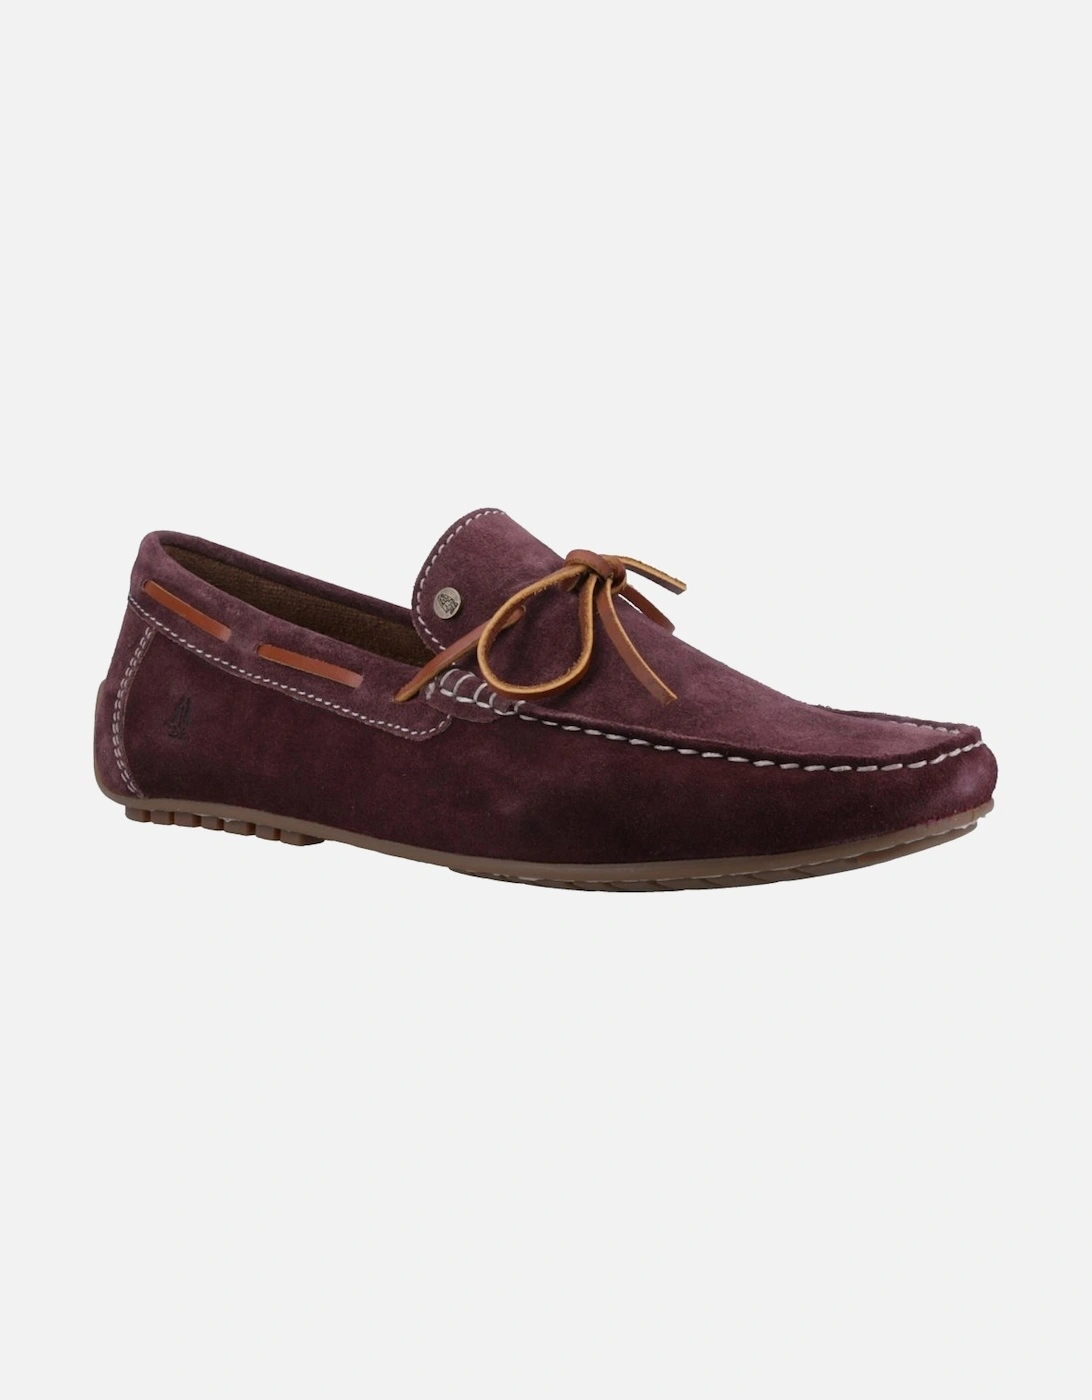 Reuben Mens Boat Shoes, 6 of 5